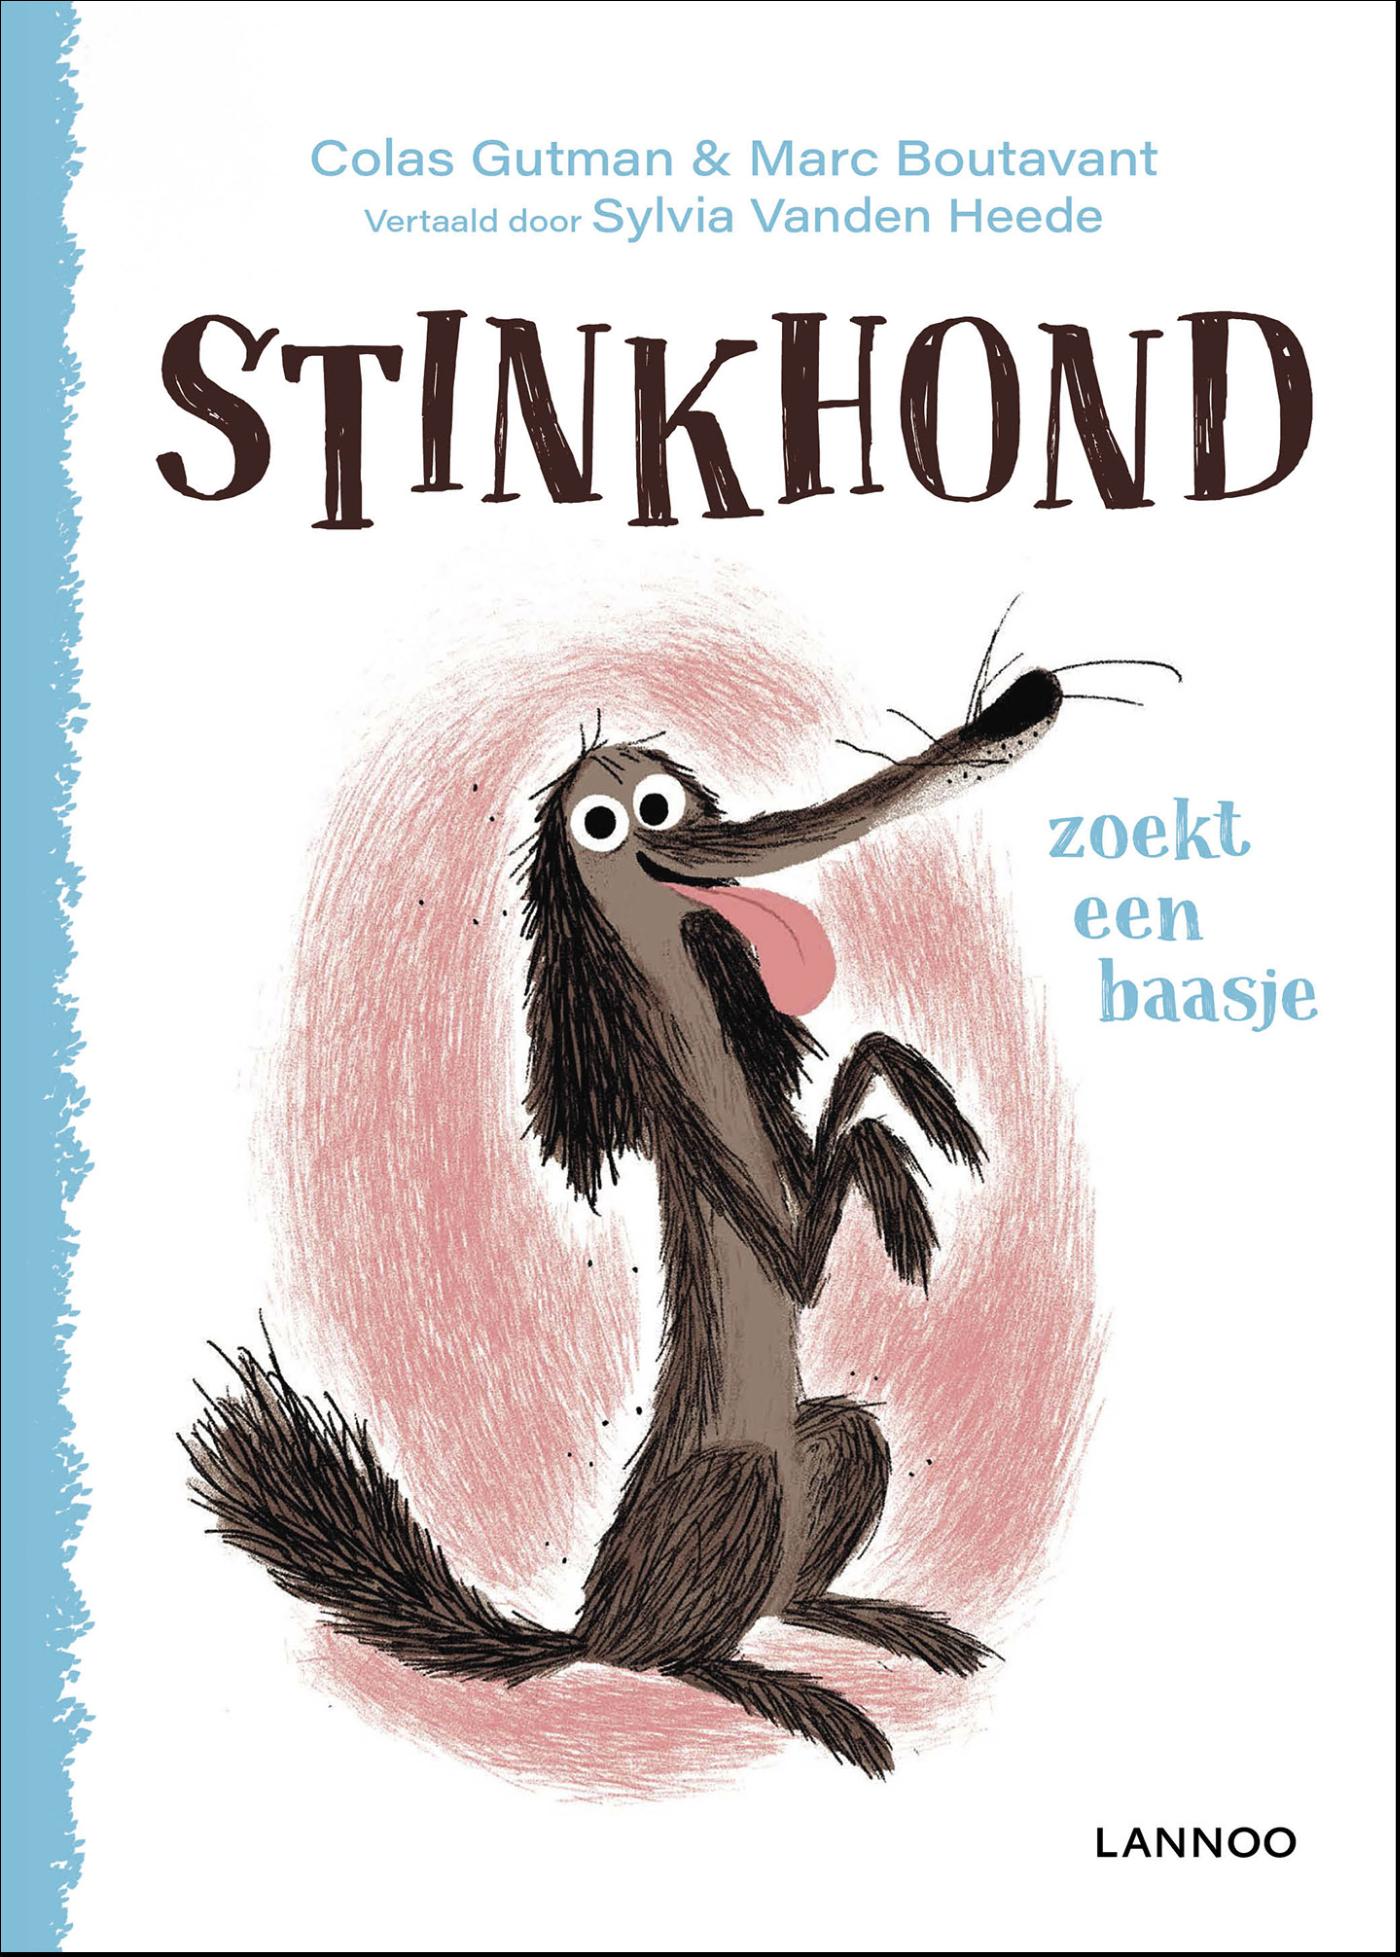 Stinkhond zoekt een baasje (Ebook)